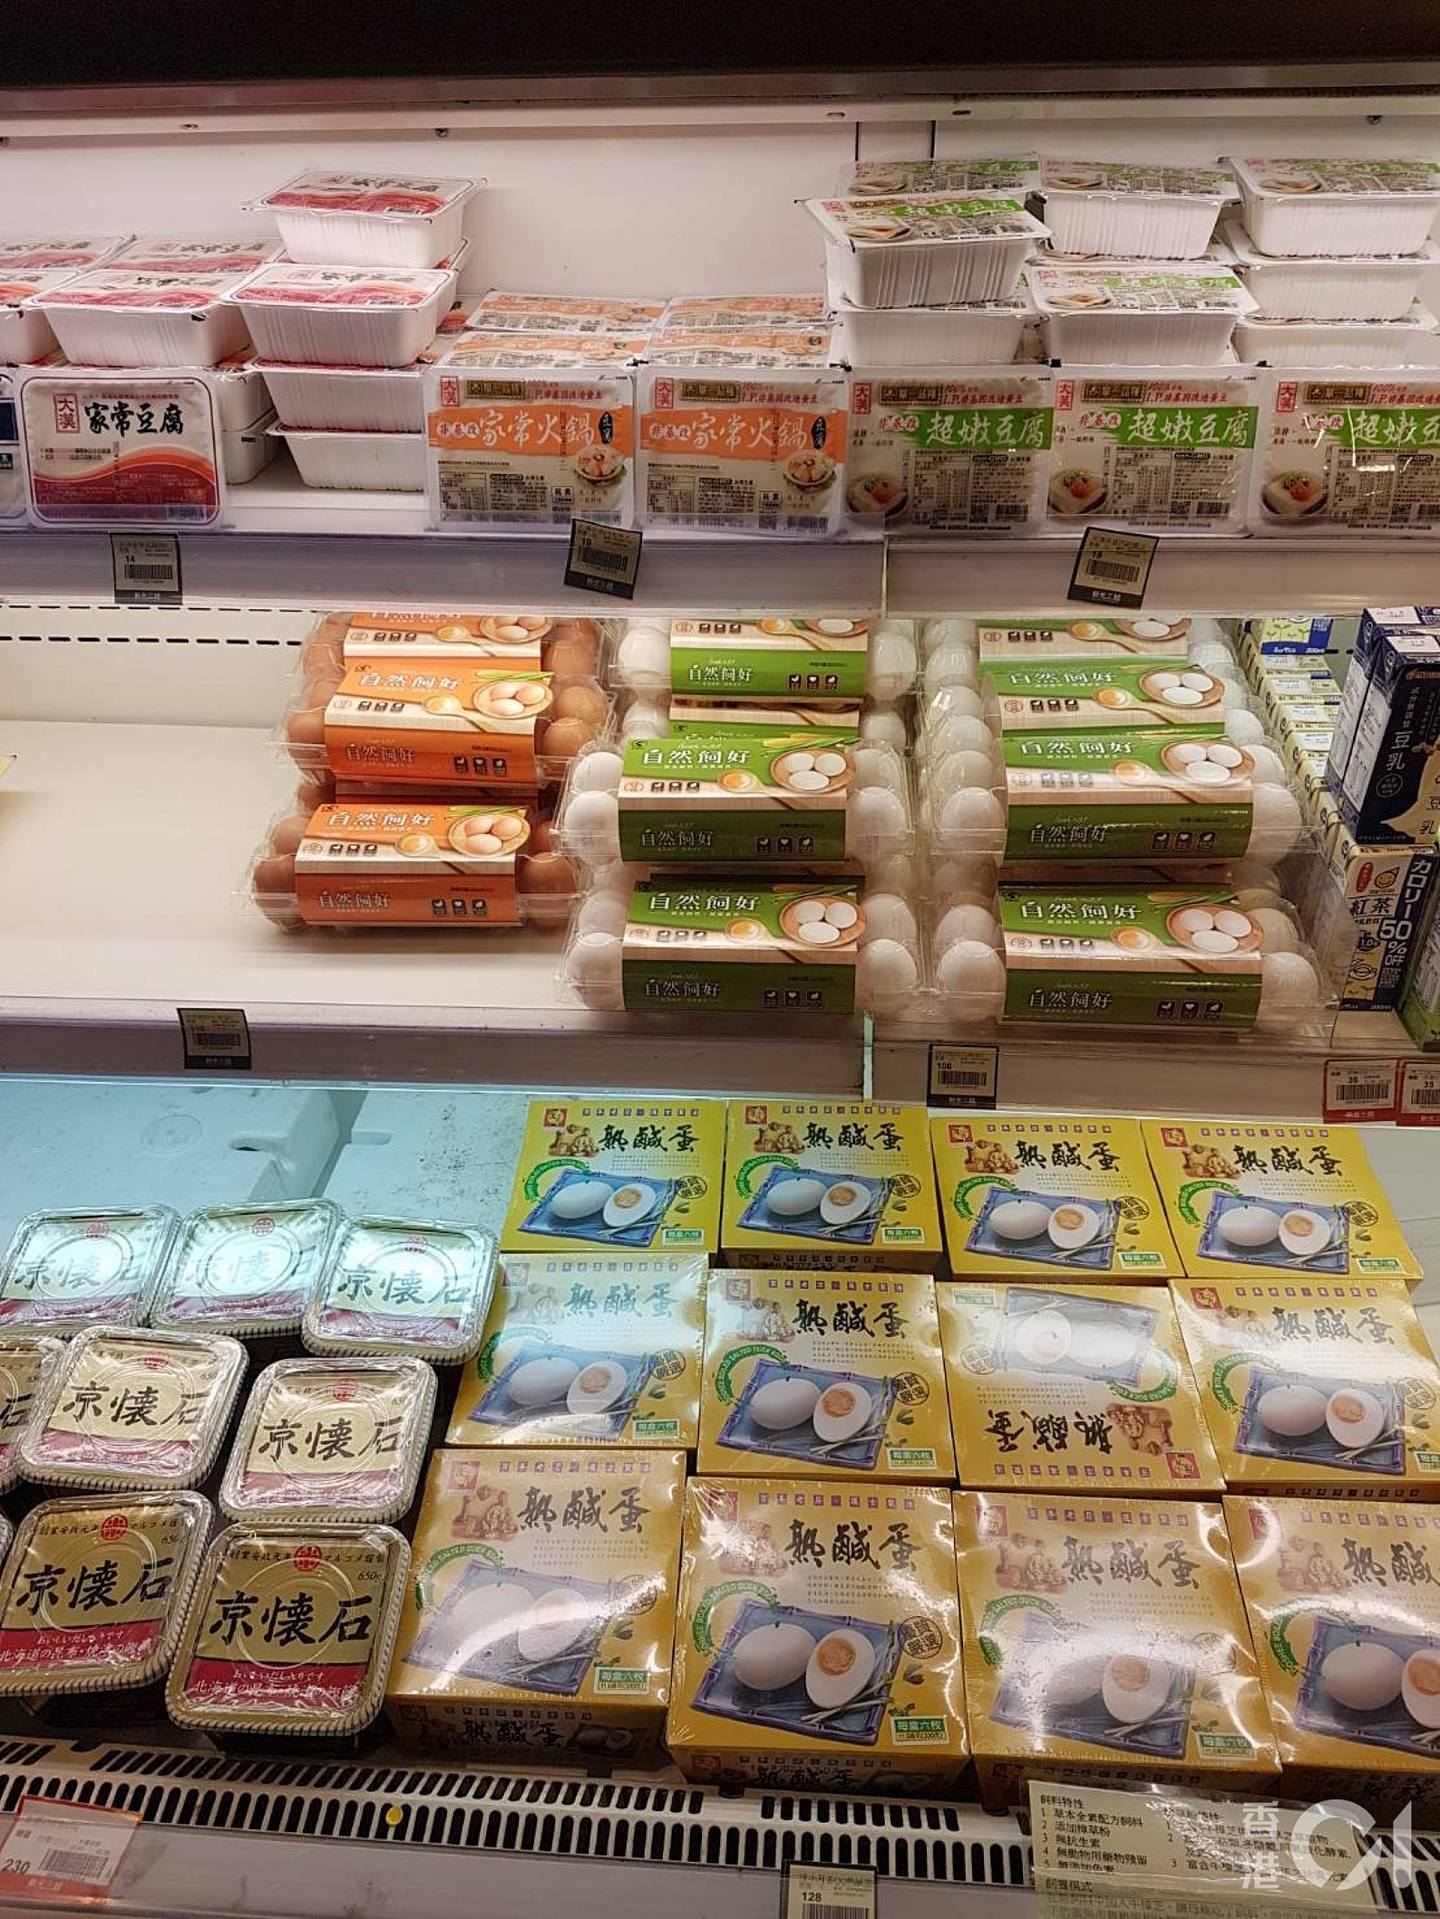 住在台北市的蔡生表示，超市还是可以买到有机鸡蛋。 （受访者提供）